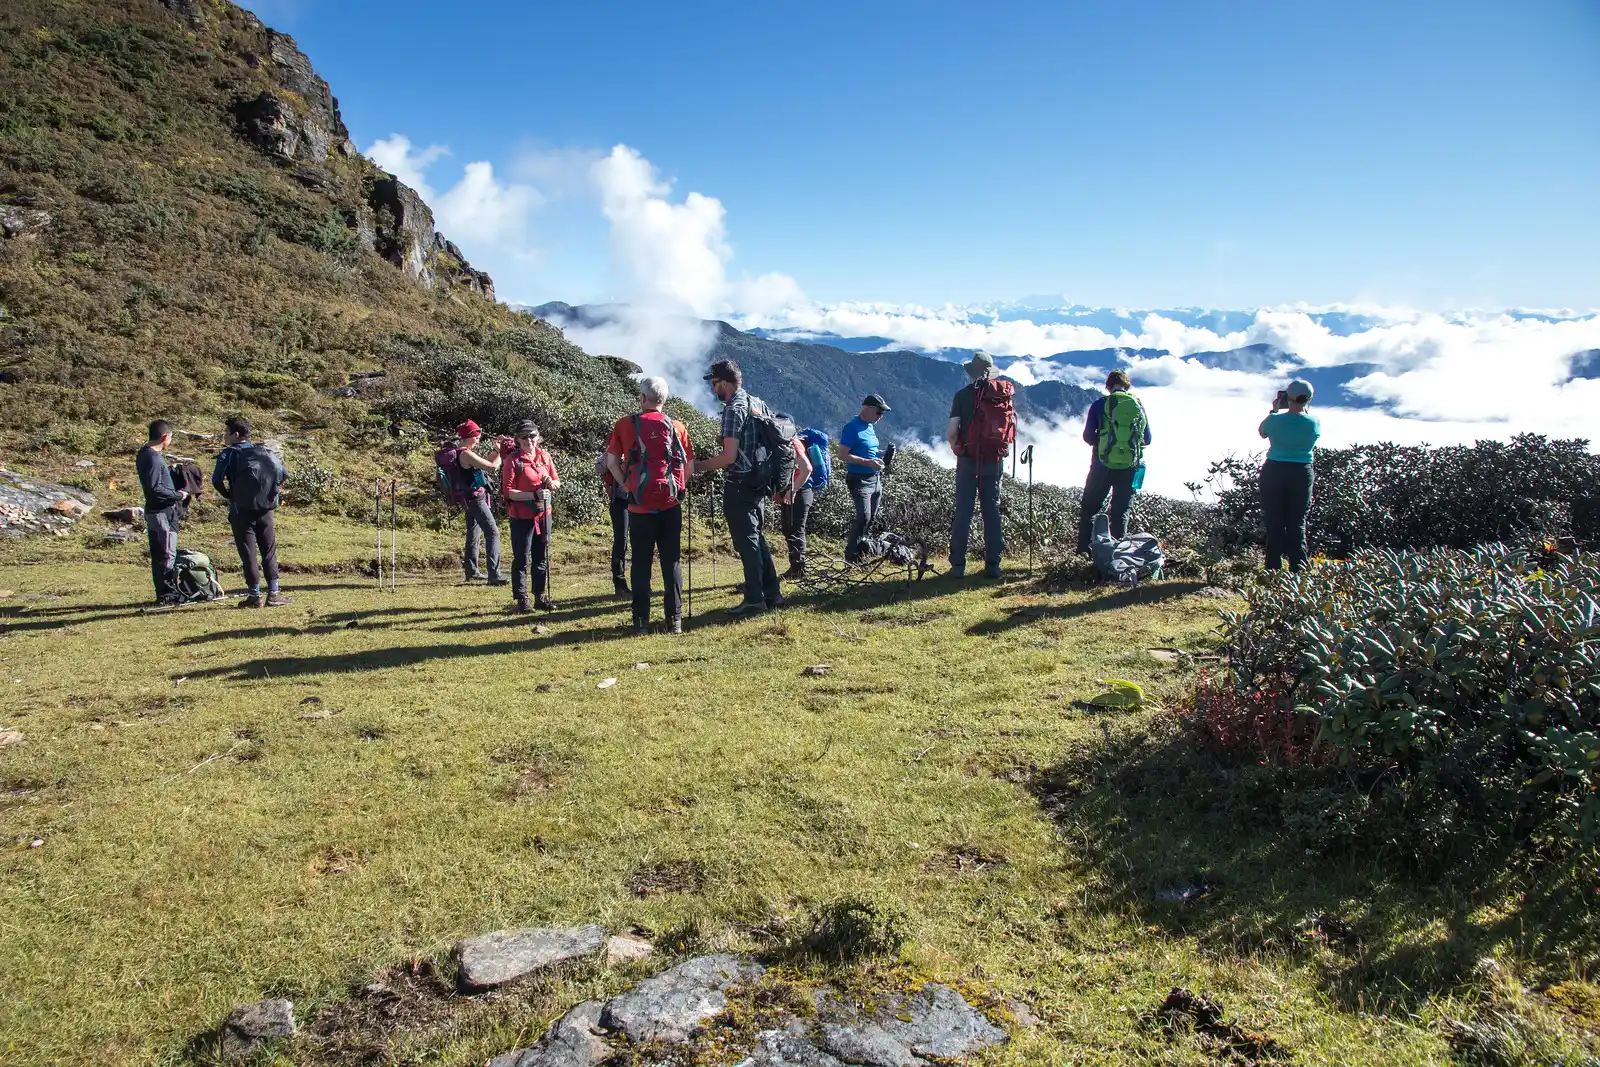 On and around Nepal Tour and Druk Path Trek Bhutan